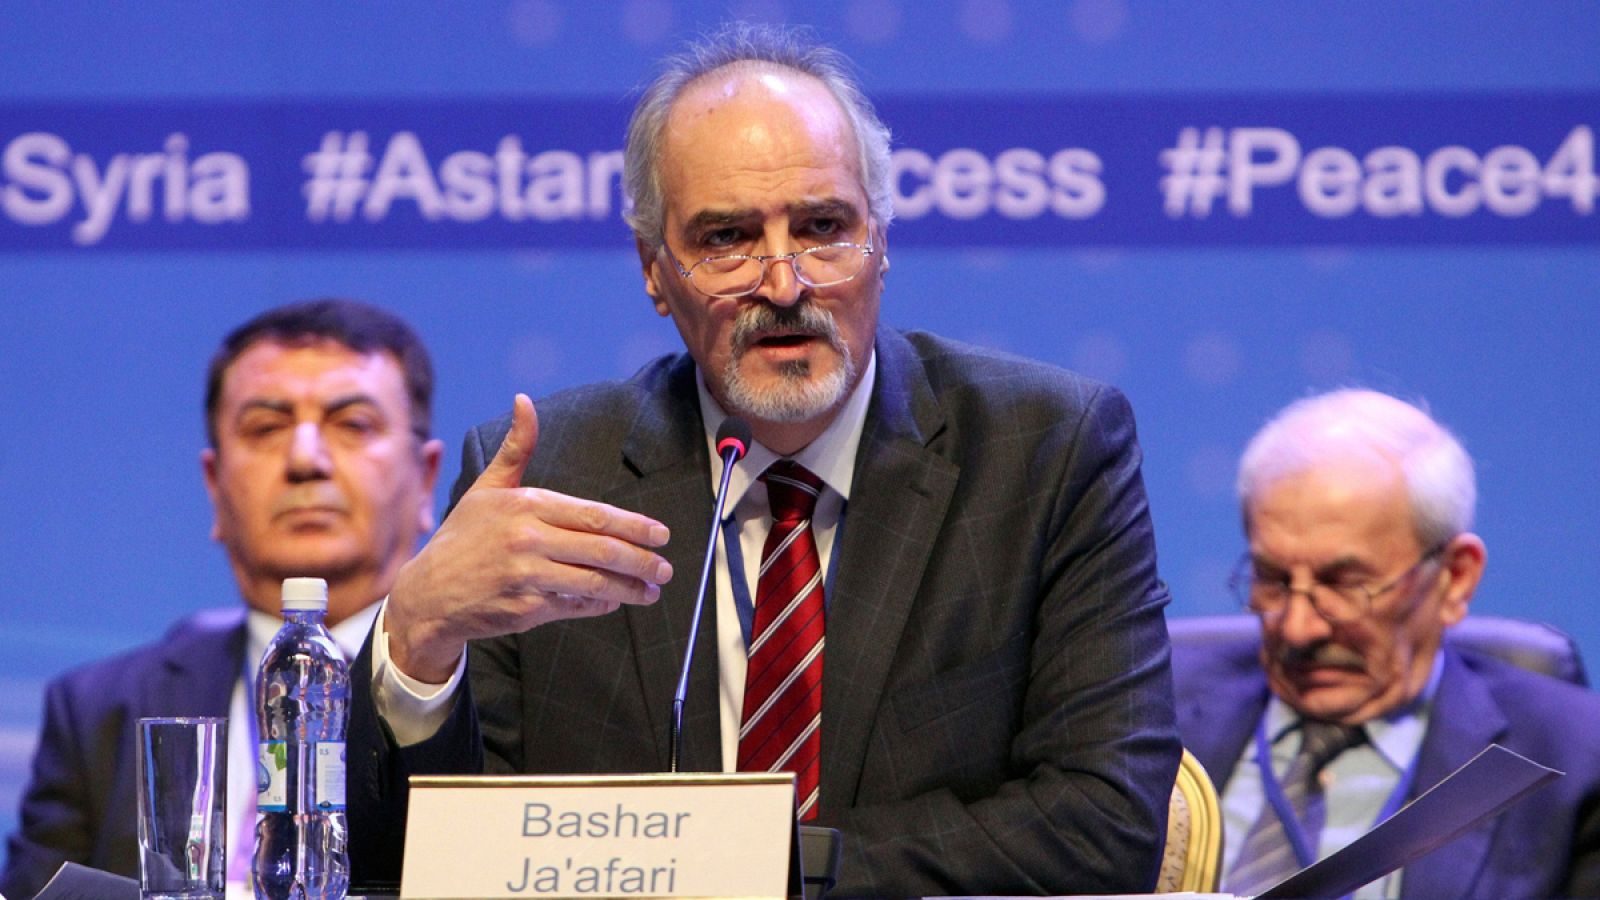 El jefe de la delegación gubernamental siria, Bashar Jaafari, durante las negociaciones de paz en Astaná (Kazajistán).